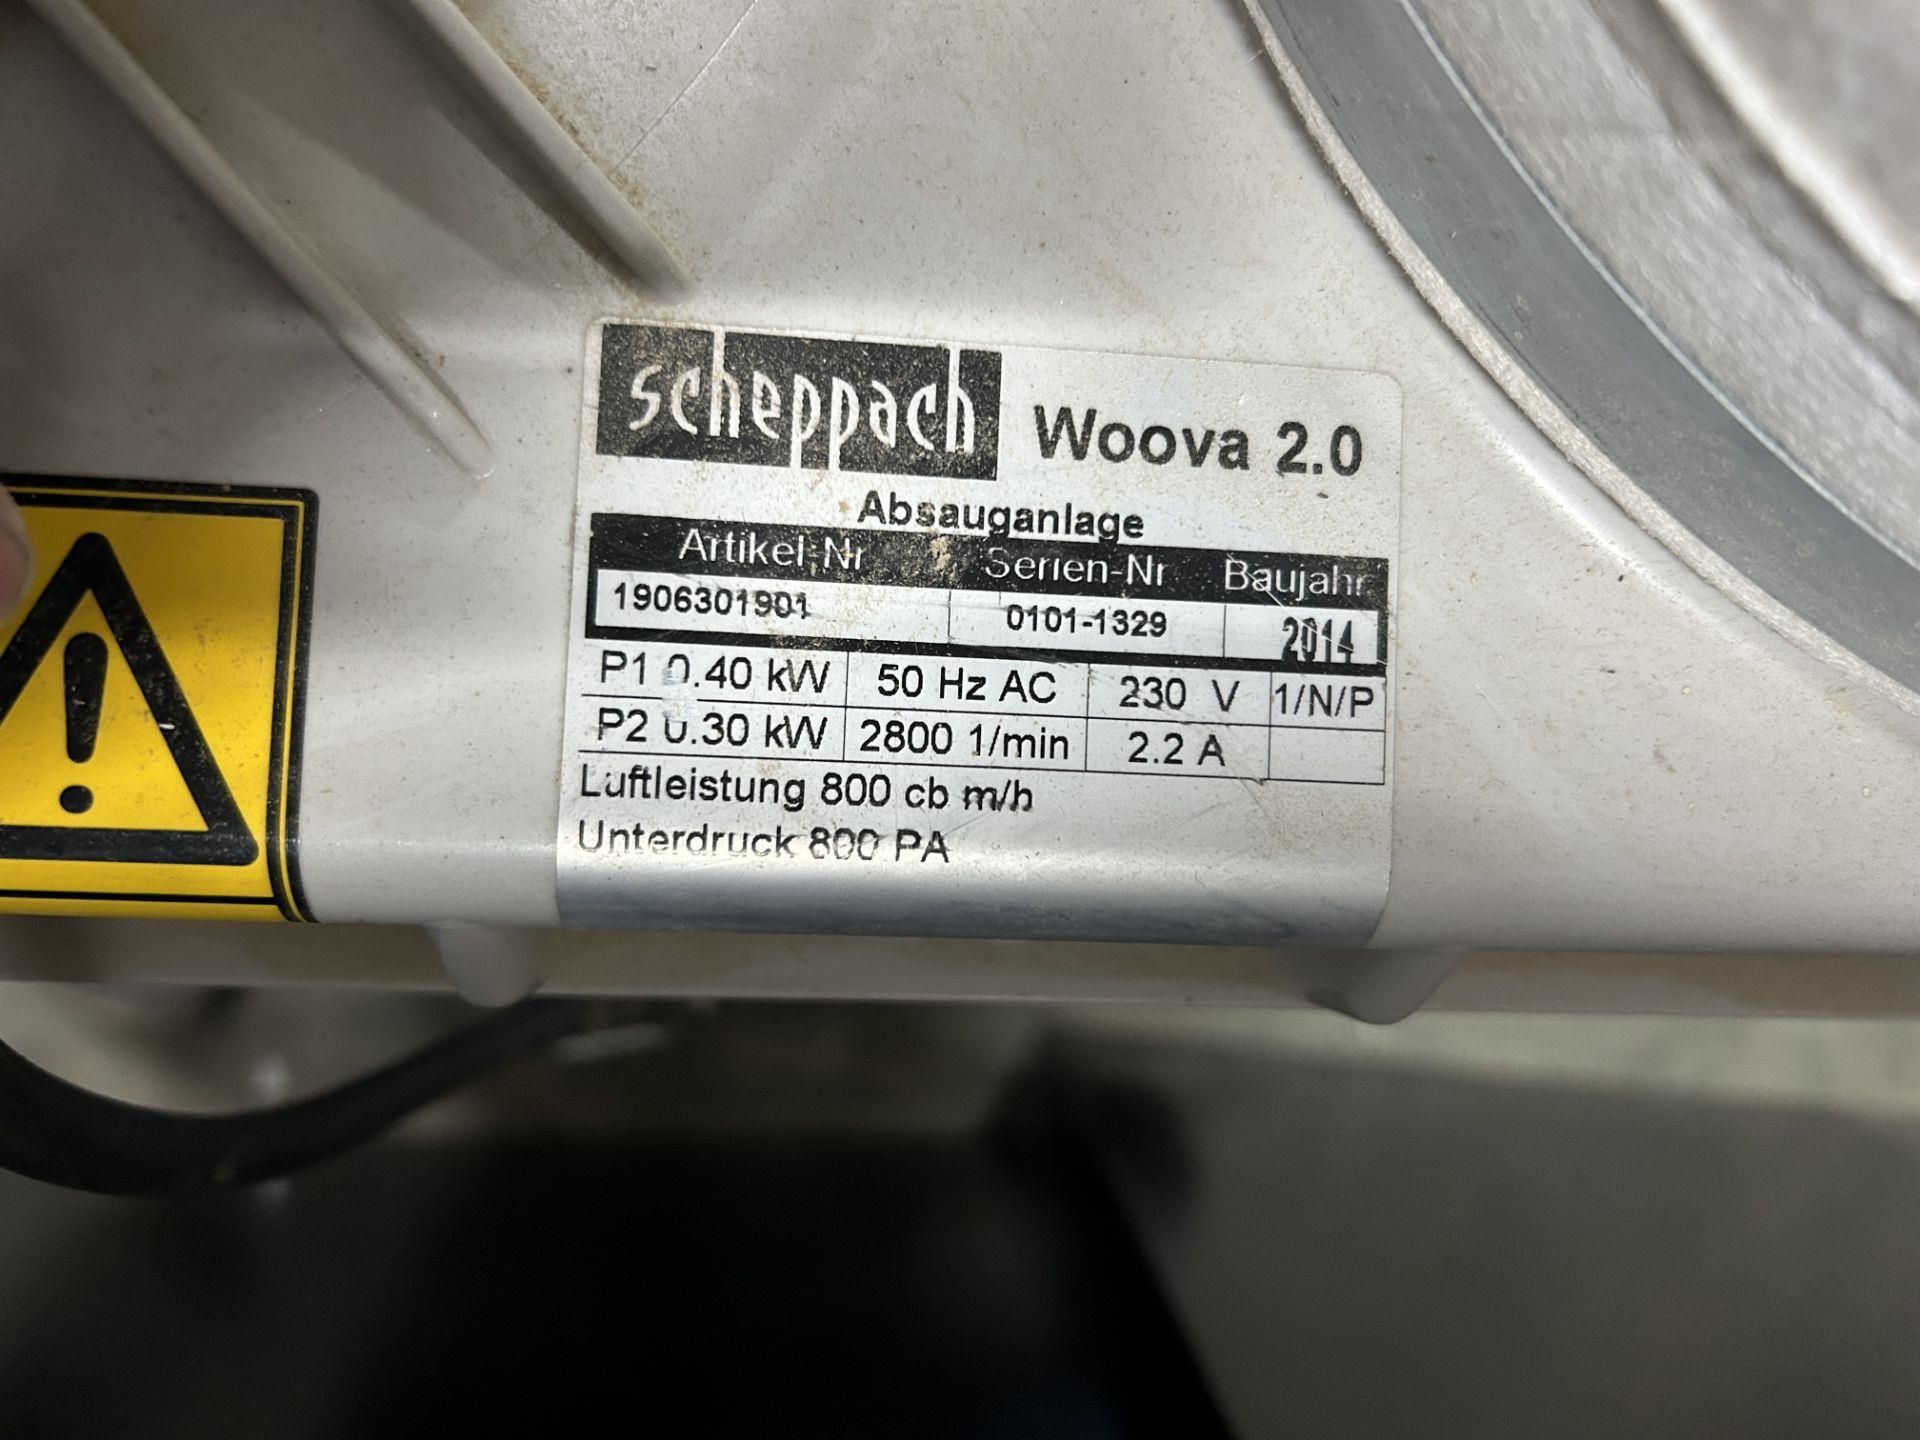 Scheppach Woova 2.0 dust extractor - Image 5 of 7